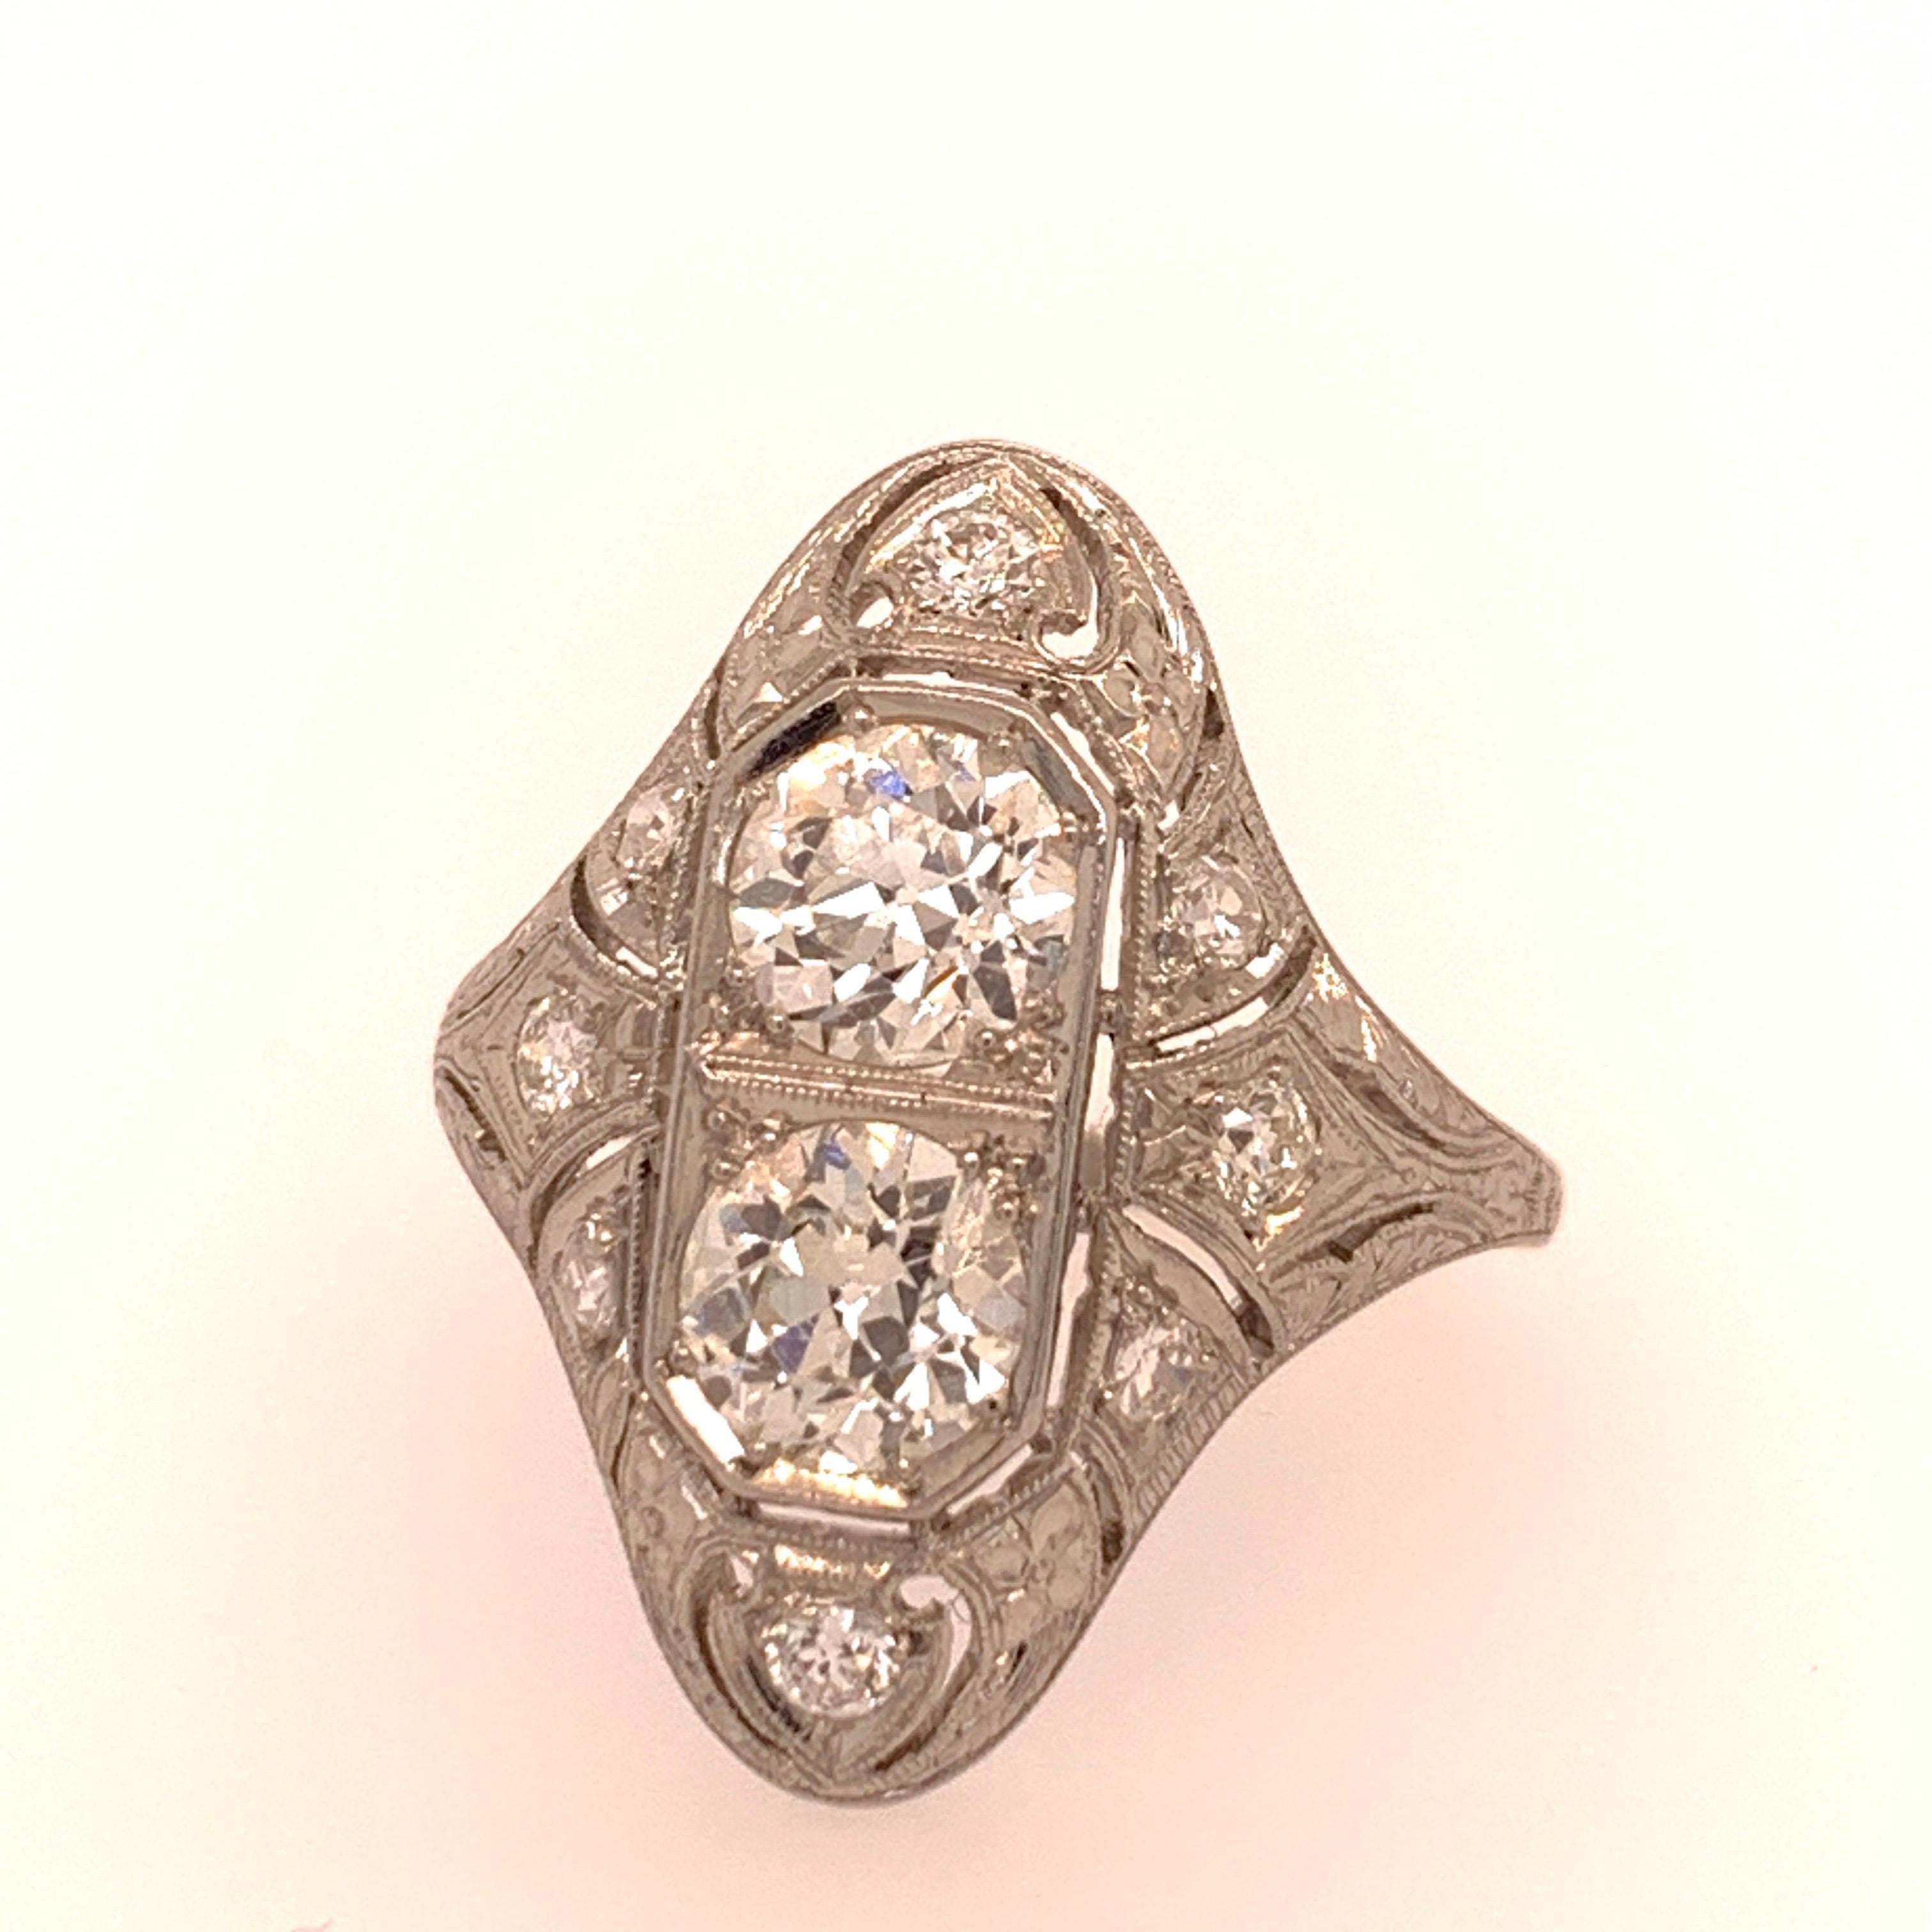 Une authentique pièce de collection vintage. 

Le poids total approximatif est de 1,75 carat. Les deux diamants centraux, de couleur F et de pureté VS, mesurent 5,2 mm. 

Taille de l'anneau 7.25